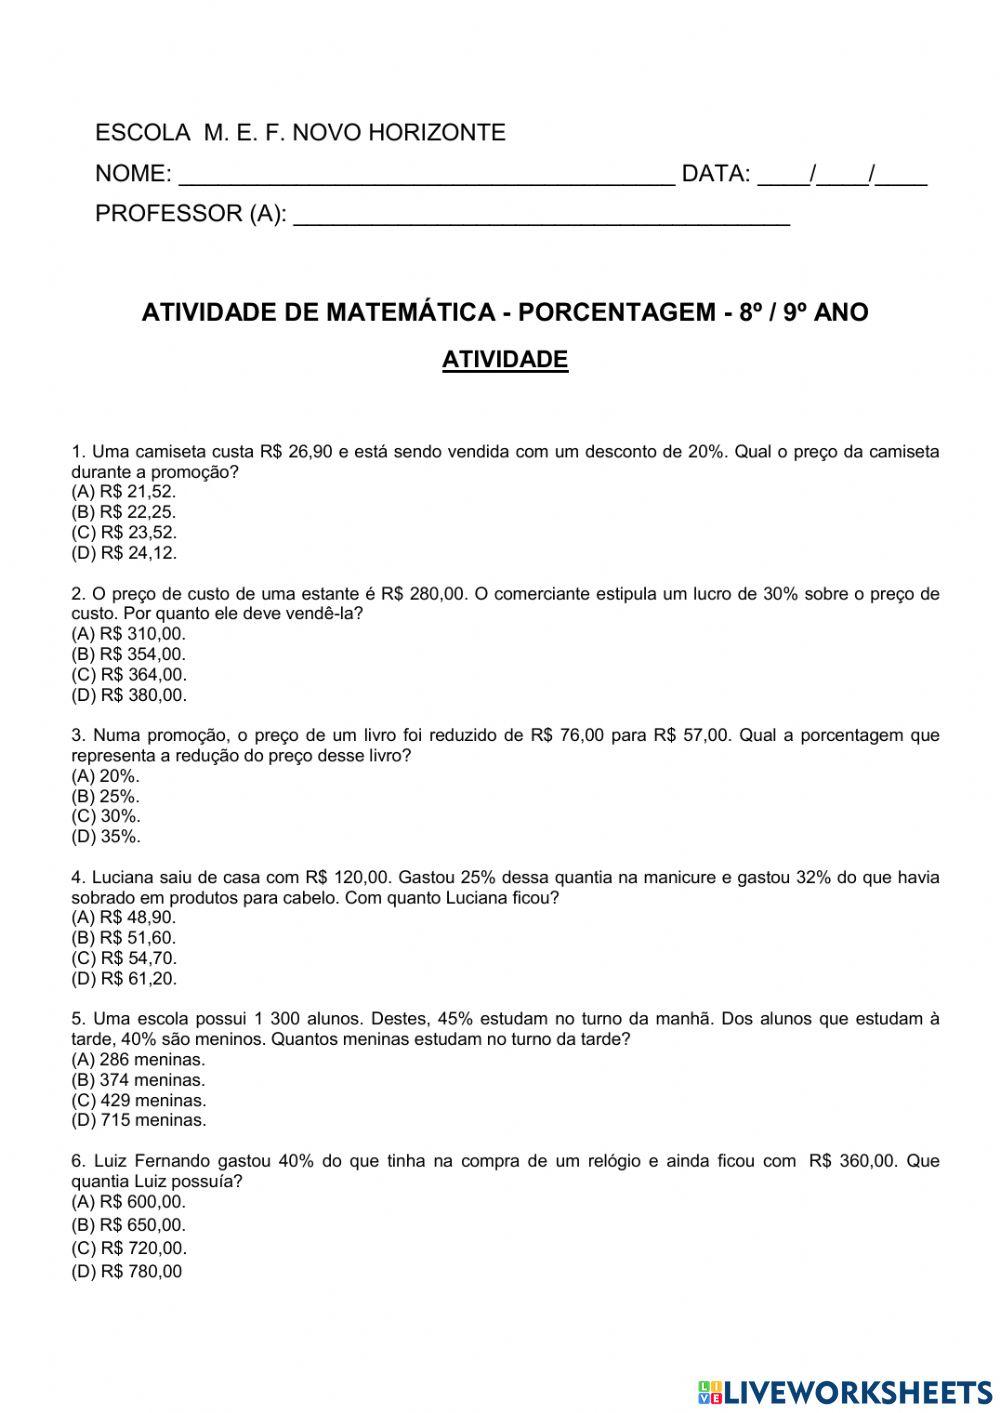 Quiz de Matemática (Porcentagem)